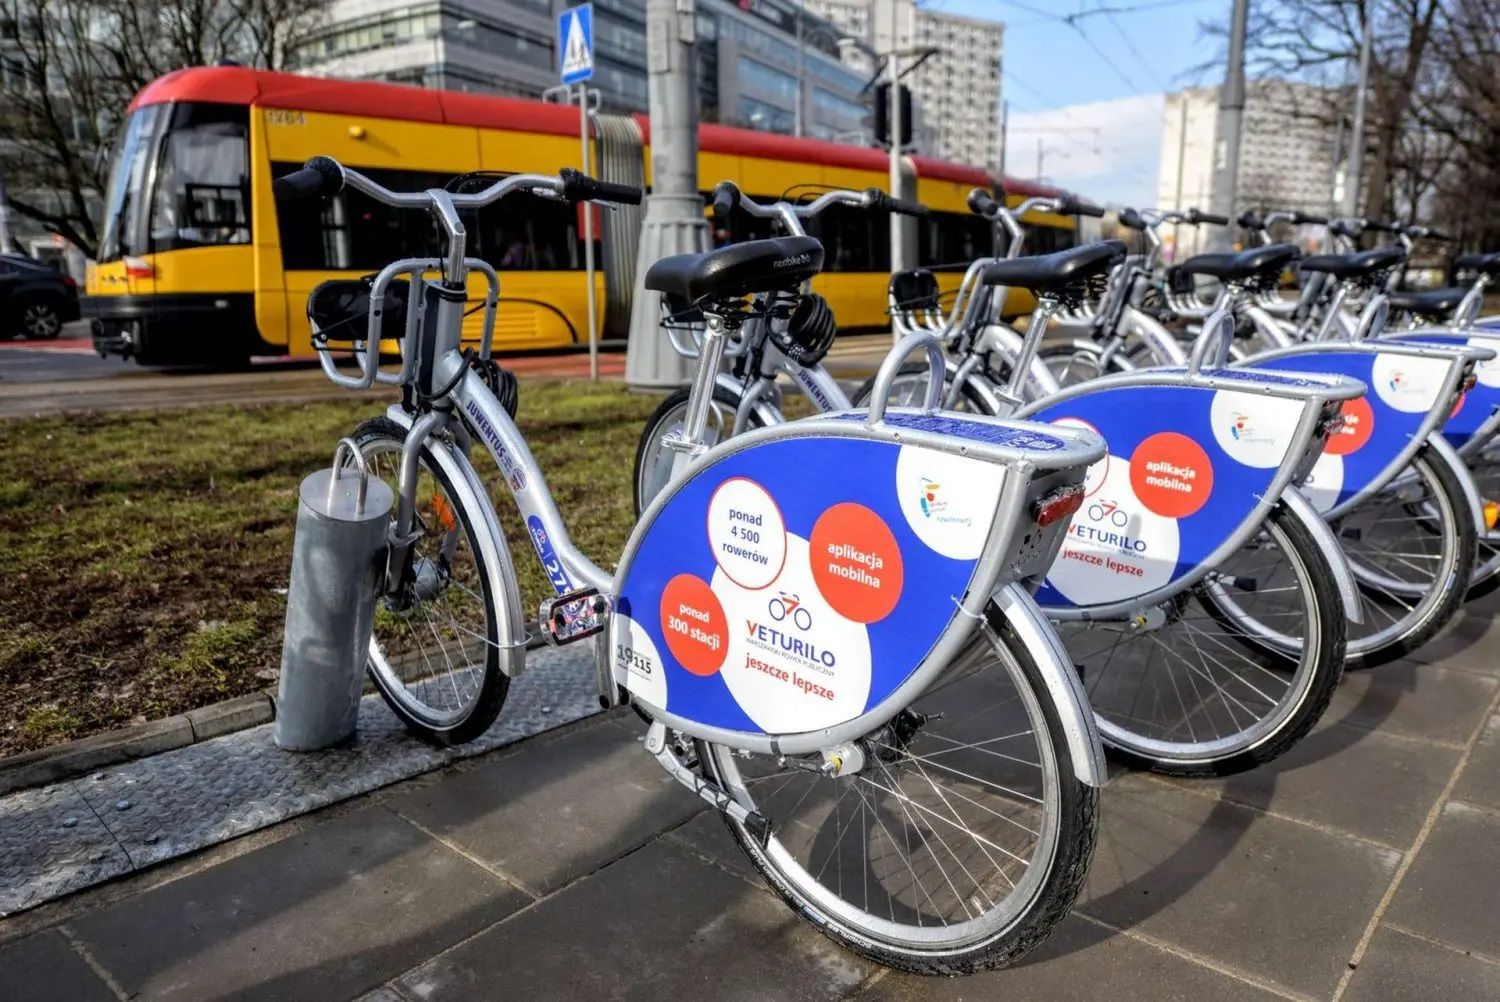 Новый оператор Veturilo в Варшаве  что изменится для арендующих городские велосипеды - Закордон